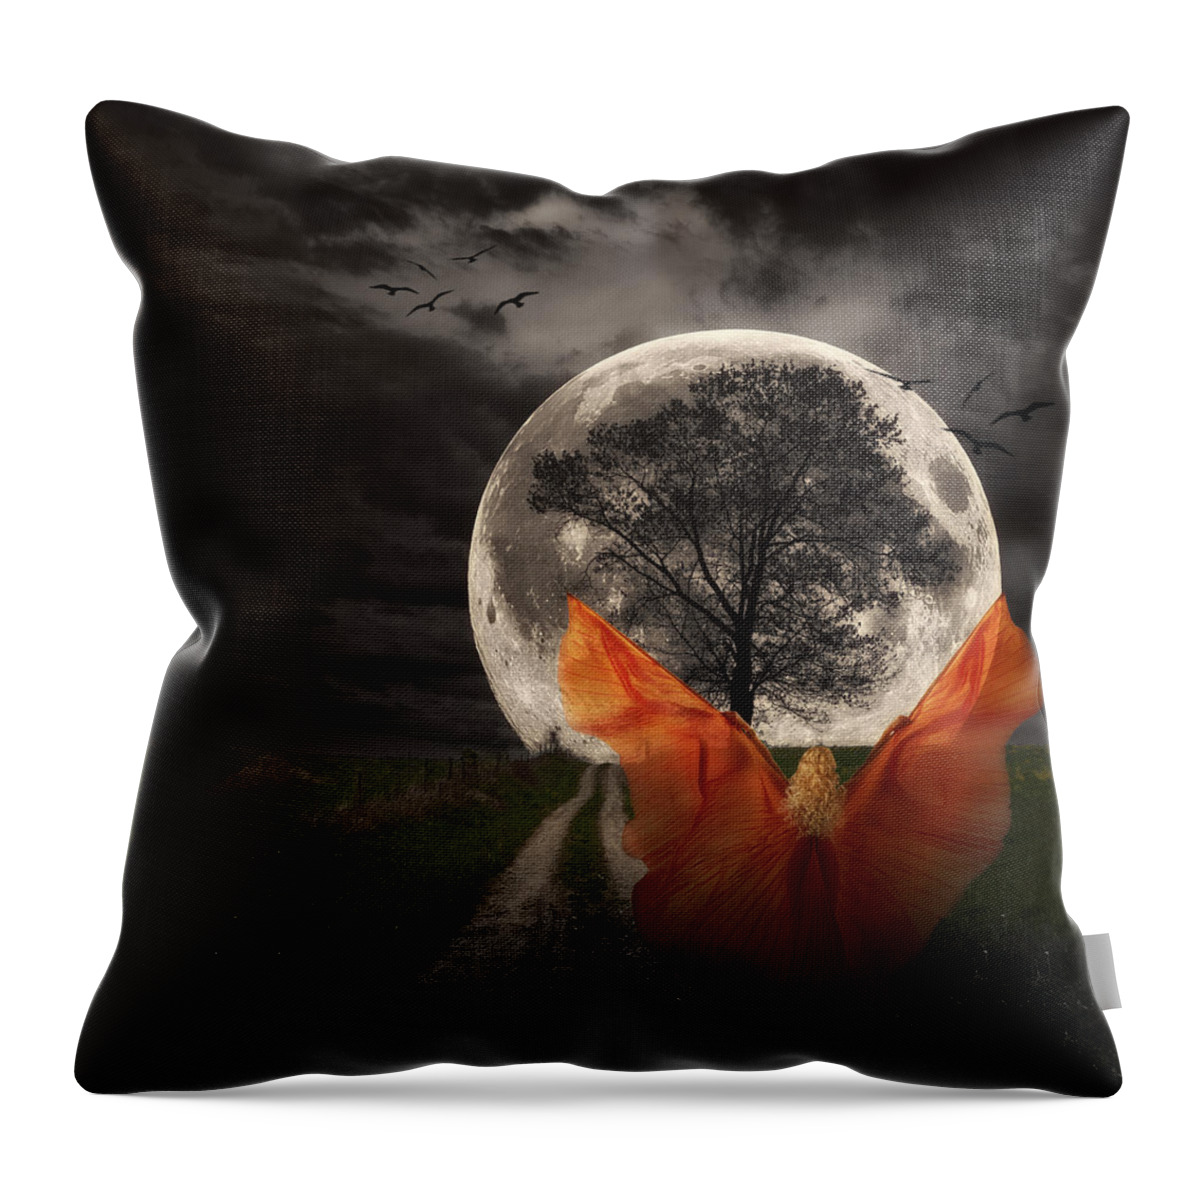 Art Throw Pillow featuring the photograph Moon Goddess by Tom Mc Nemar